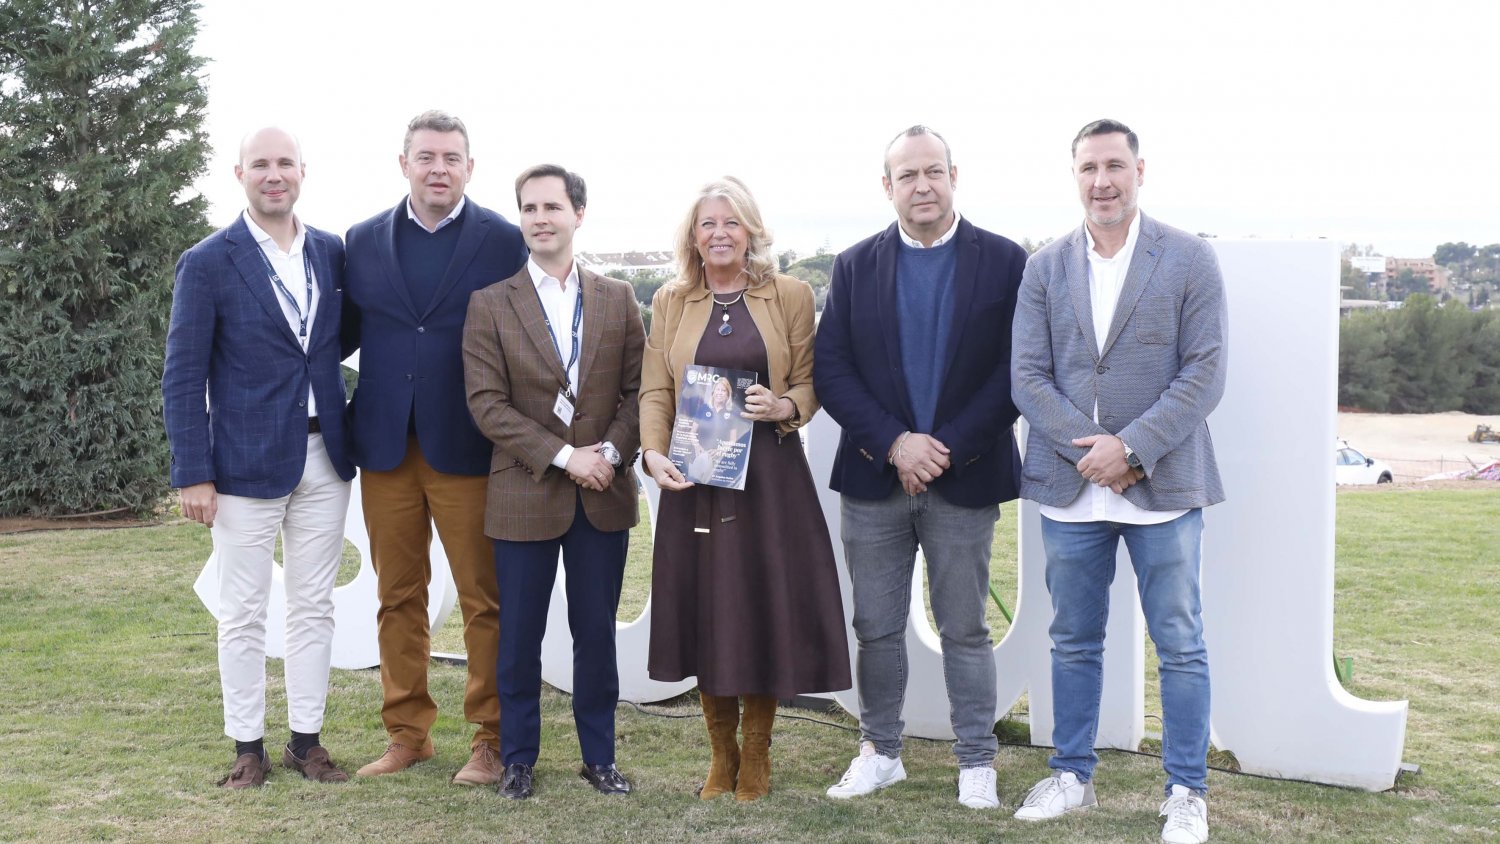 La alcaldesa destaca el trabajo del Marbella Rugby como “gran embajador de la ciudad”